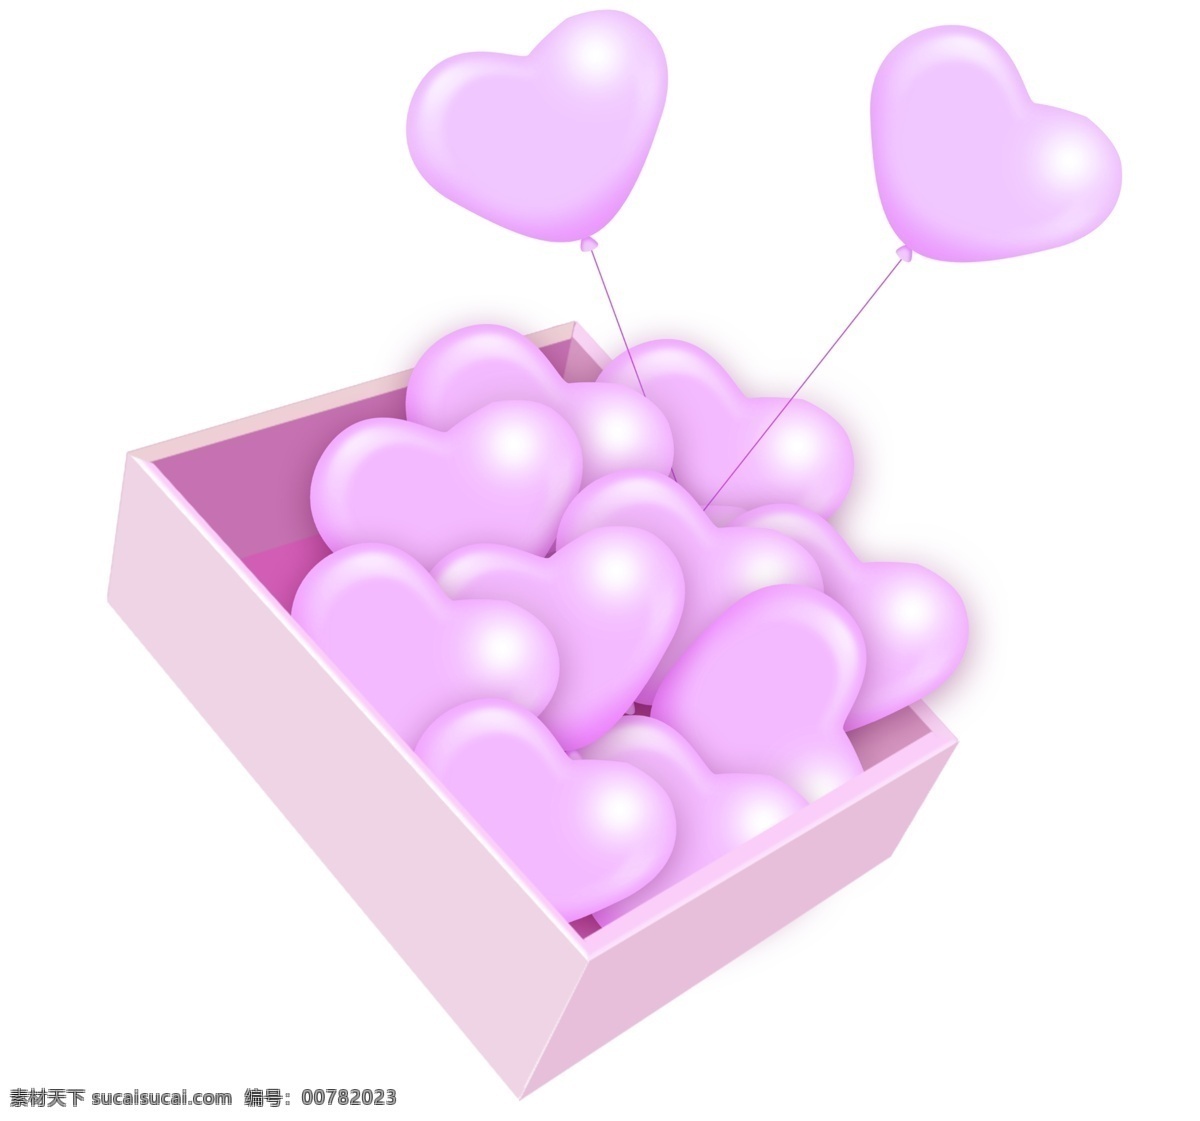 紫色 心形 爱心 气球 爱心气球 心形气球 浪漫情人节 情人节 婚礼 法式婚礼 玫瑰 520 表白 恋爱